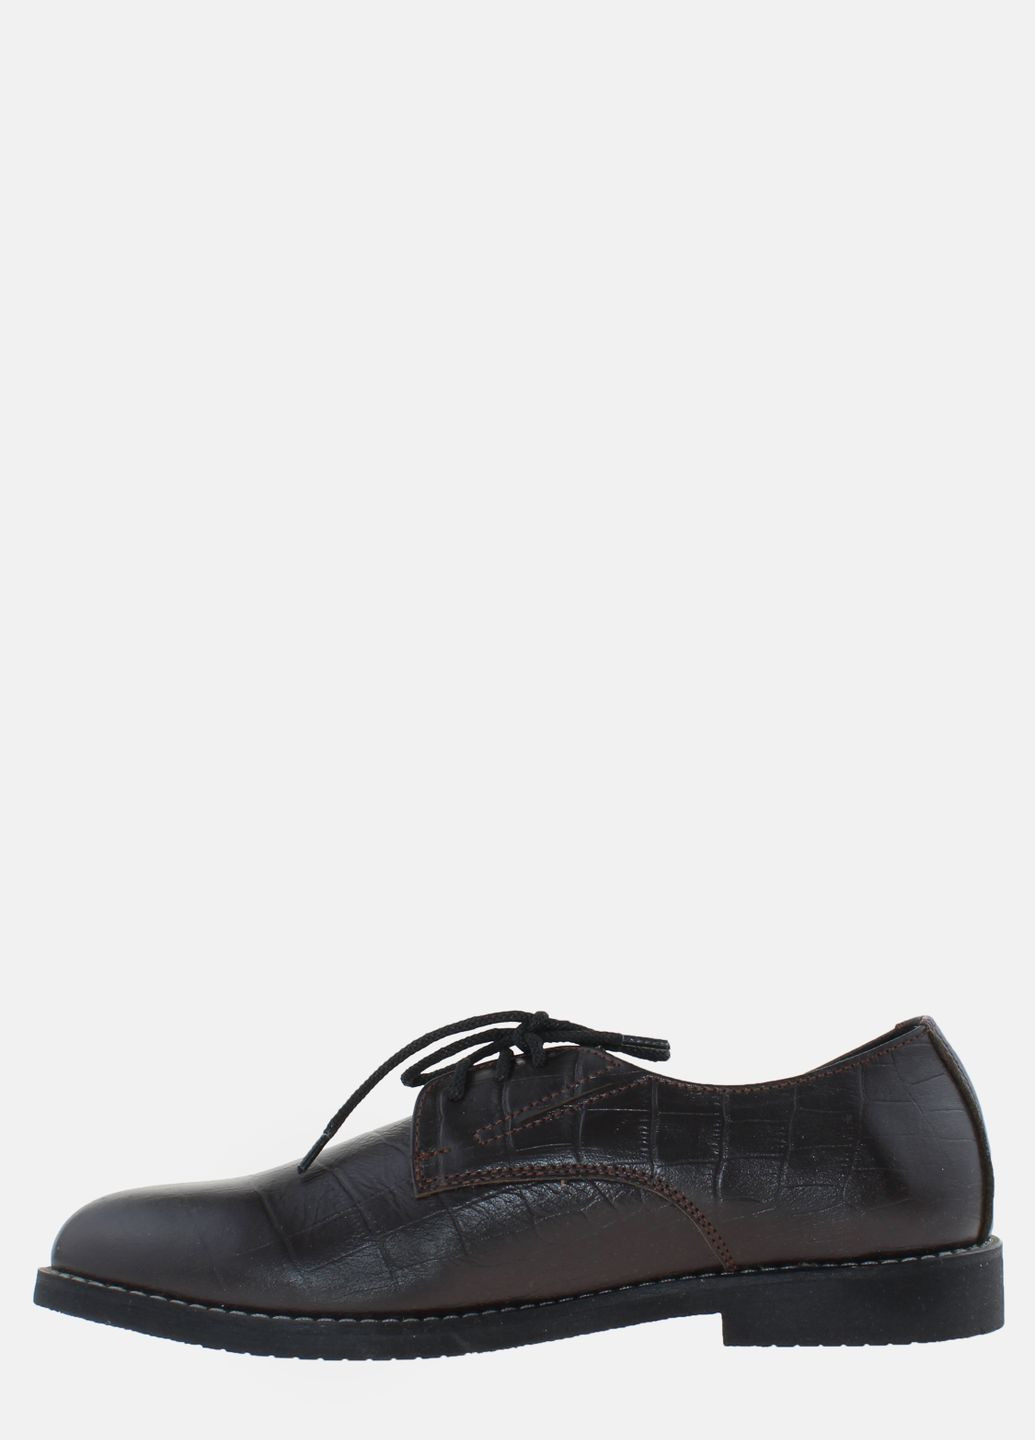 Коричневые туфли rcw2028 коричневый Carvallio